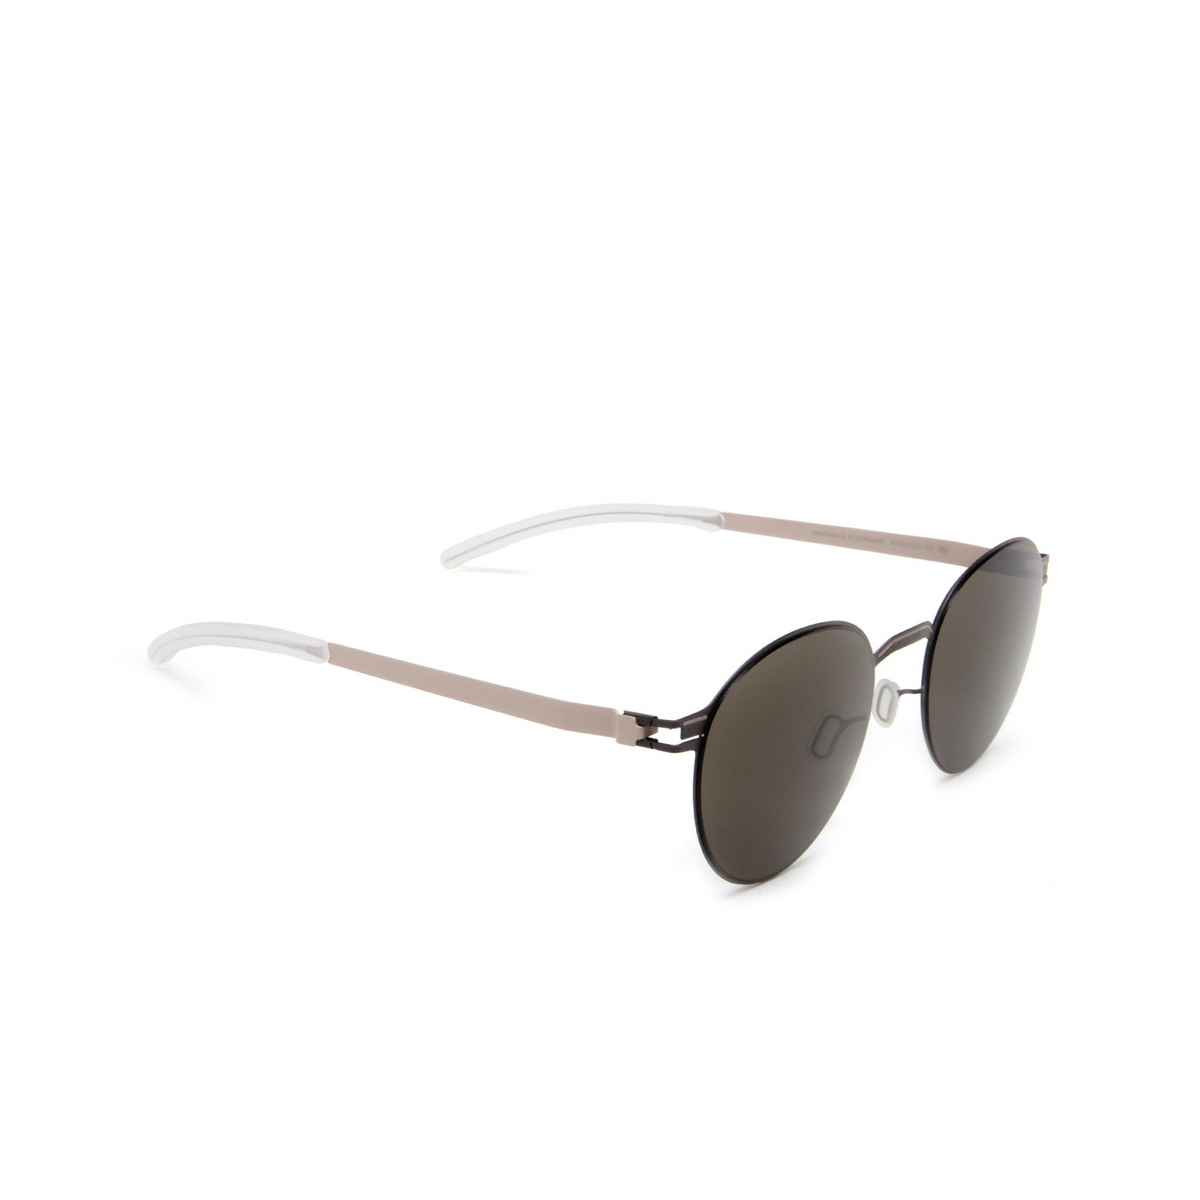 Mykita CARLO Sunglasses 430 Mocca/Dark Sand - 2/4